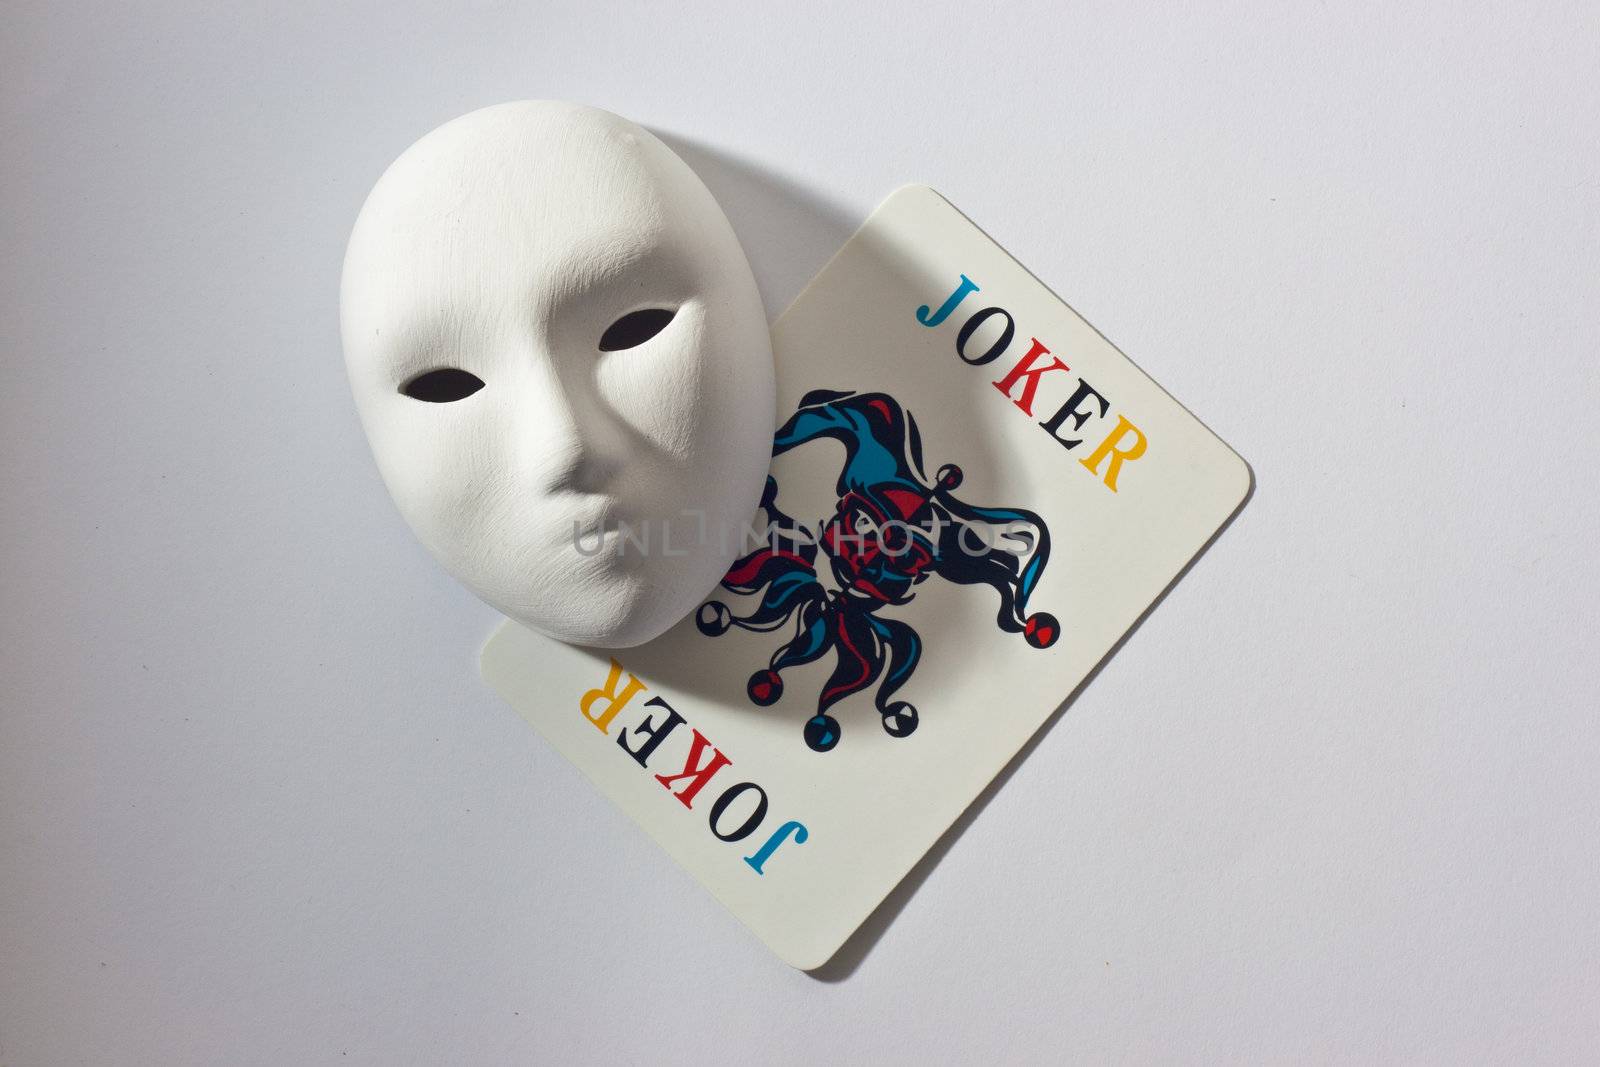 plaster mask and joker